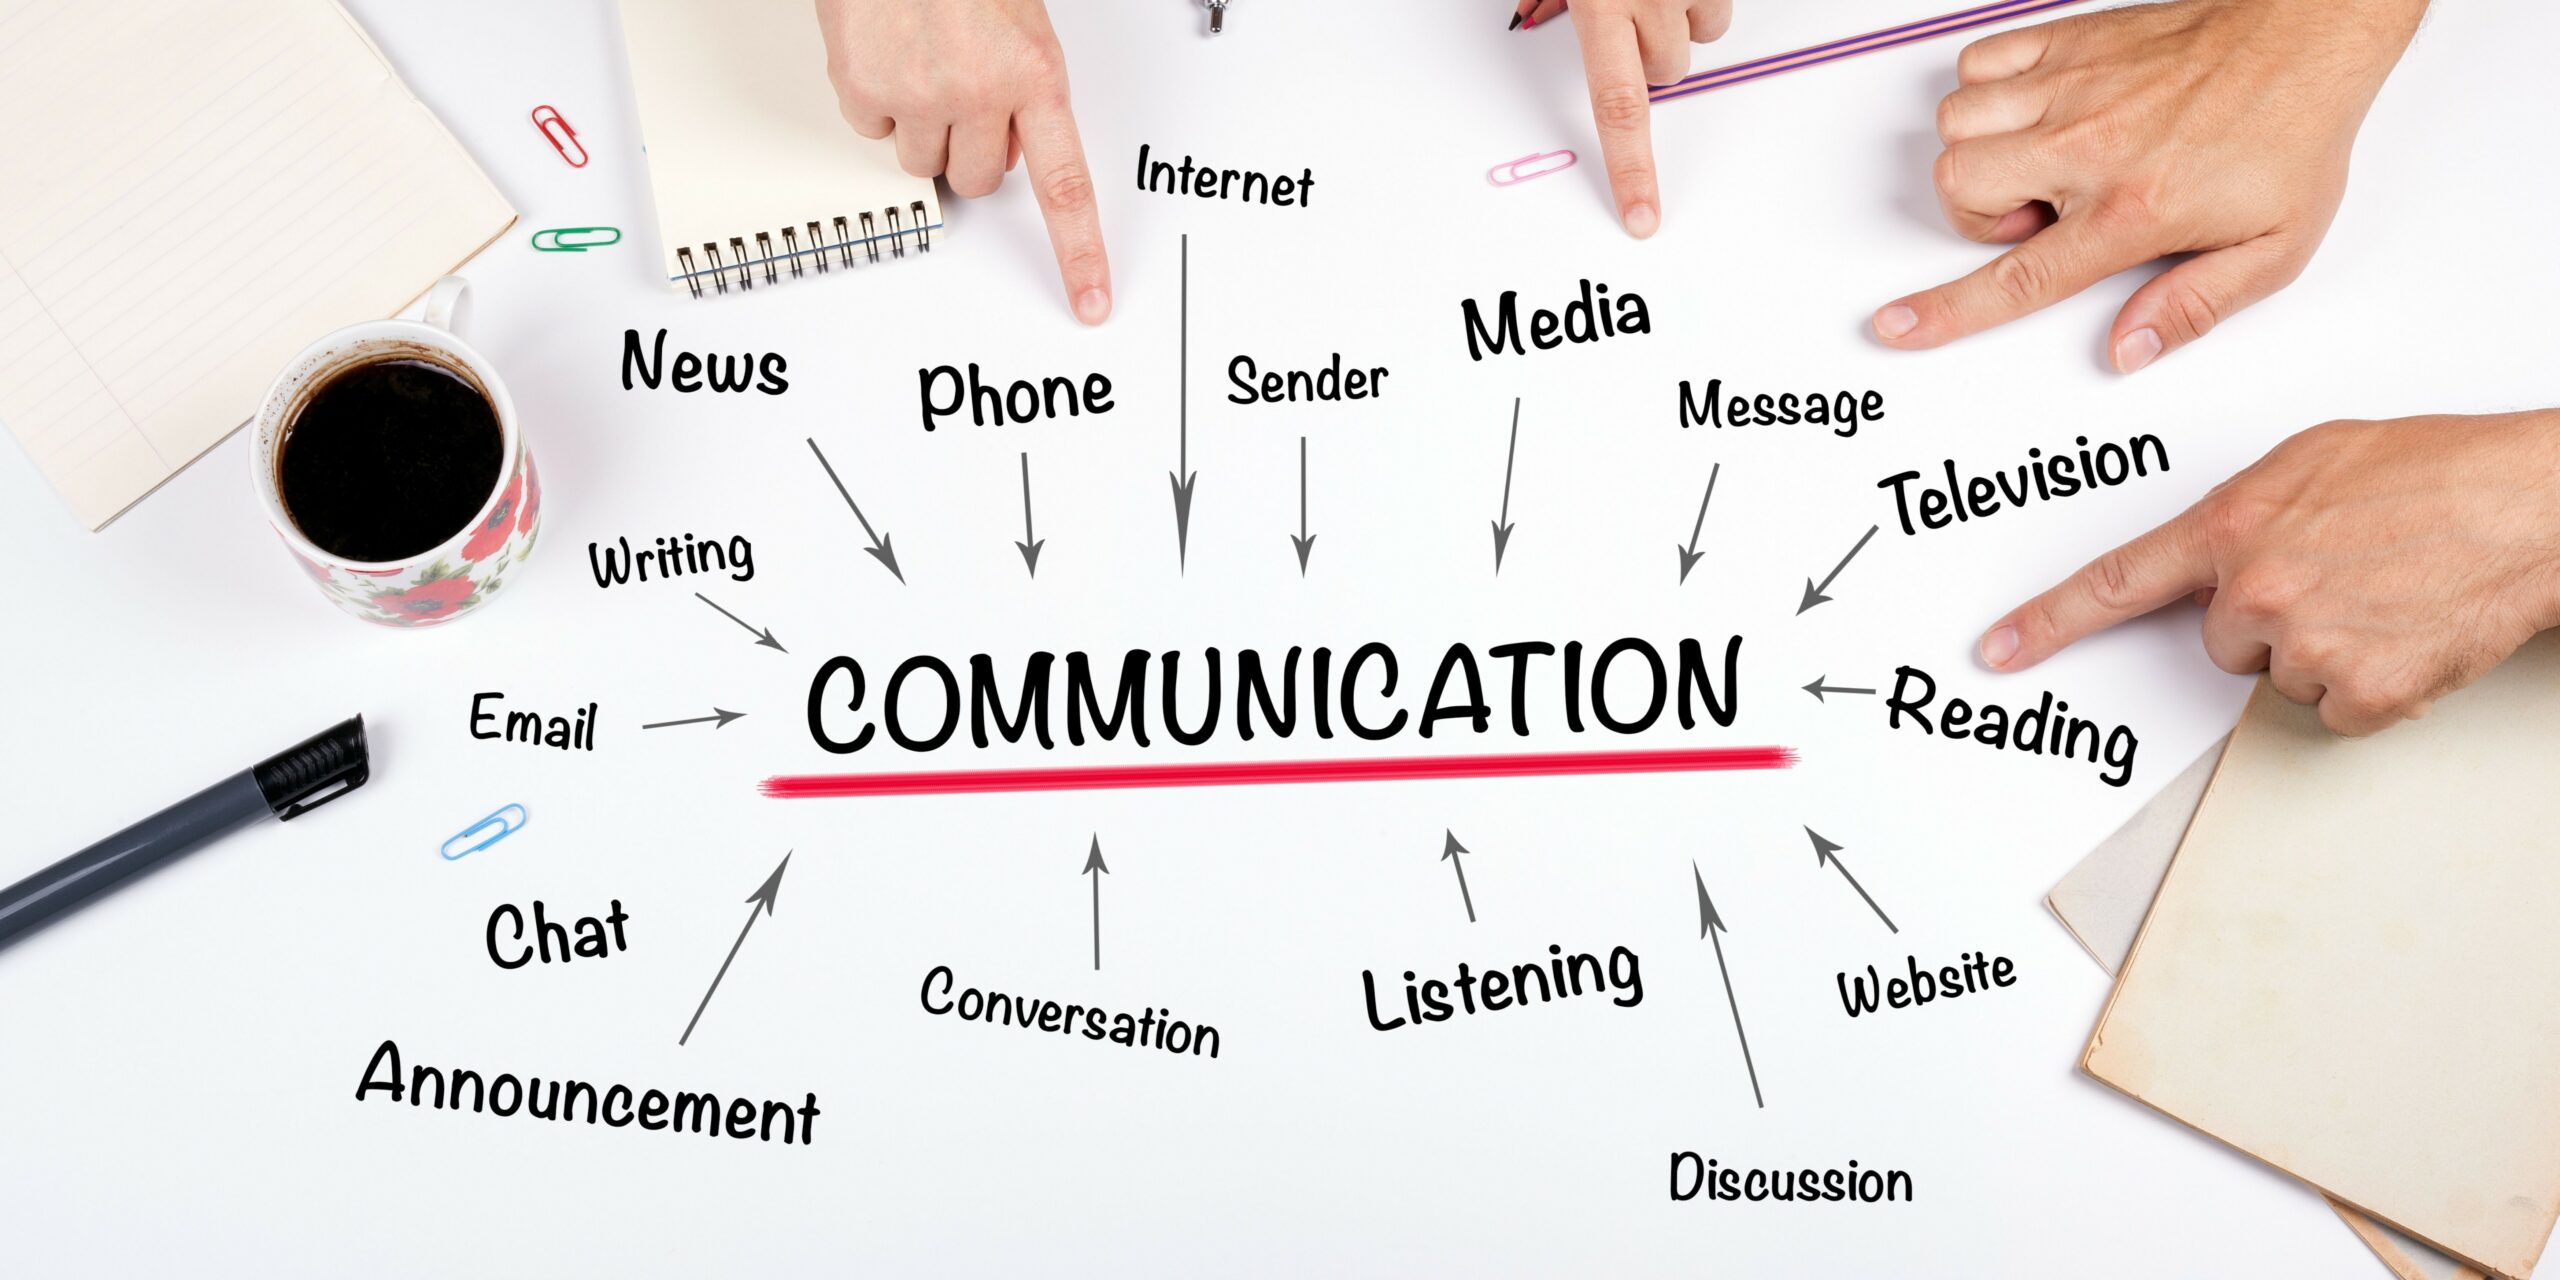 komunikasi adalah